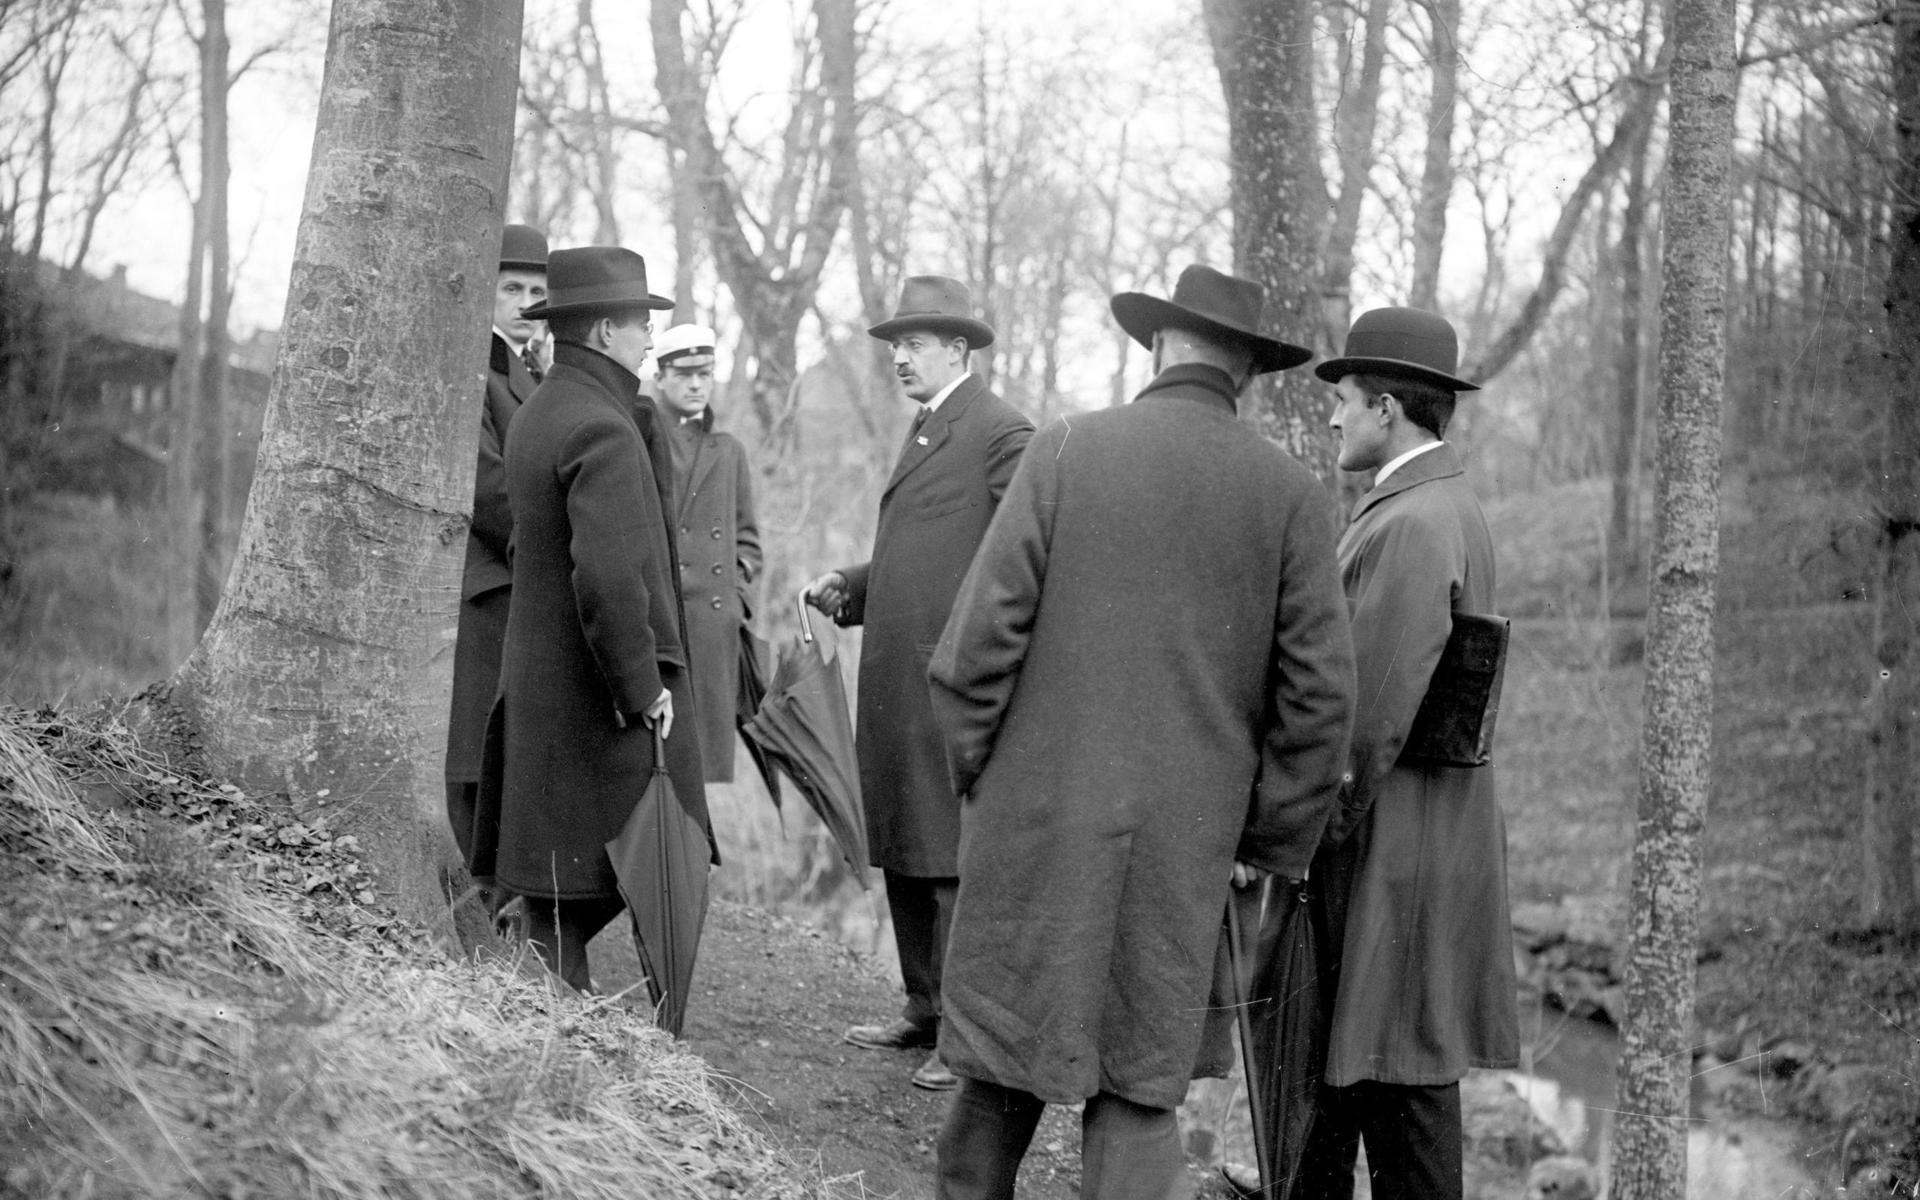 Mannen i mitten av delegationen är enligt bildtexten i arkivet troligen Carl Skottsberg. Året är 1919 och platsen är Botaniska trädgården som är under uppbyggnad.